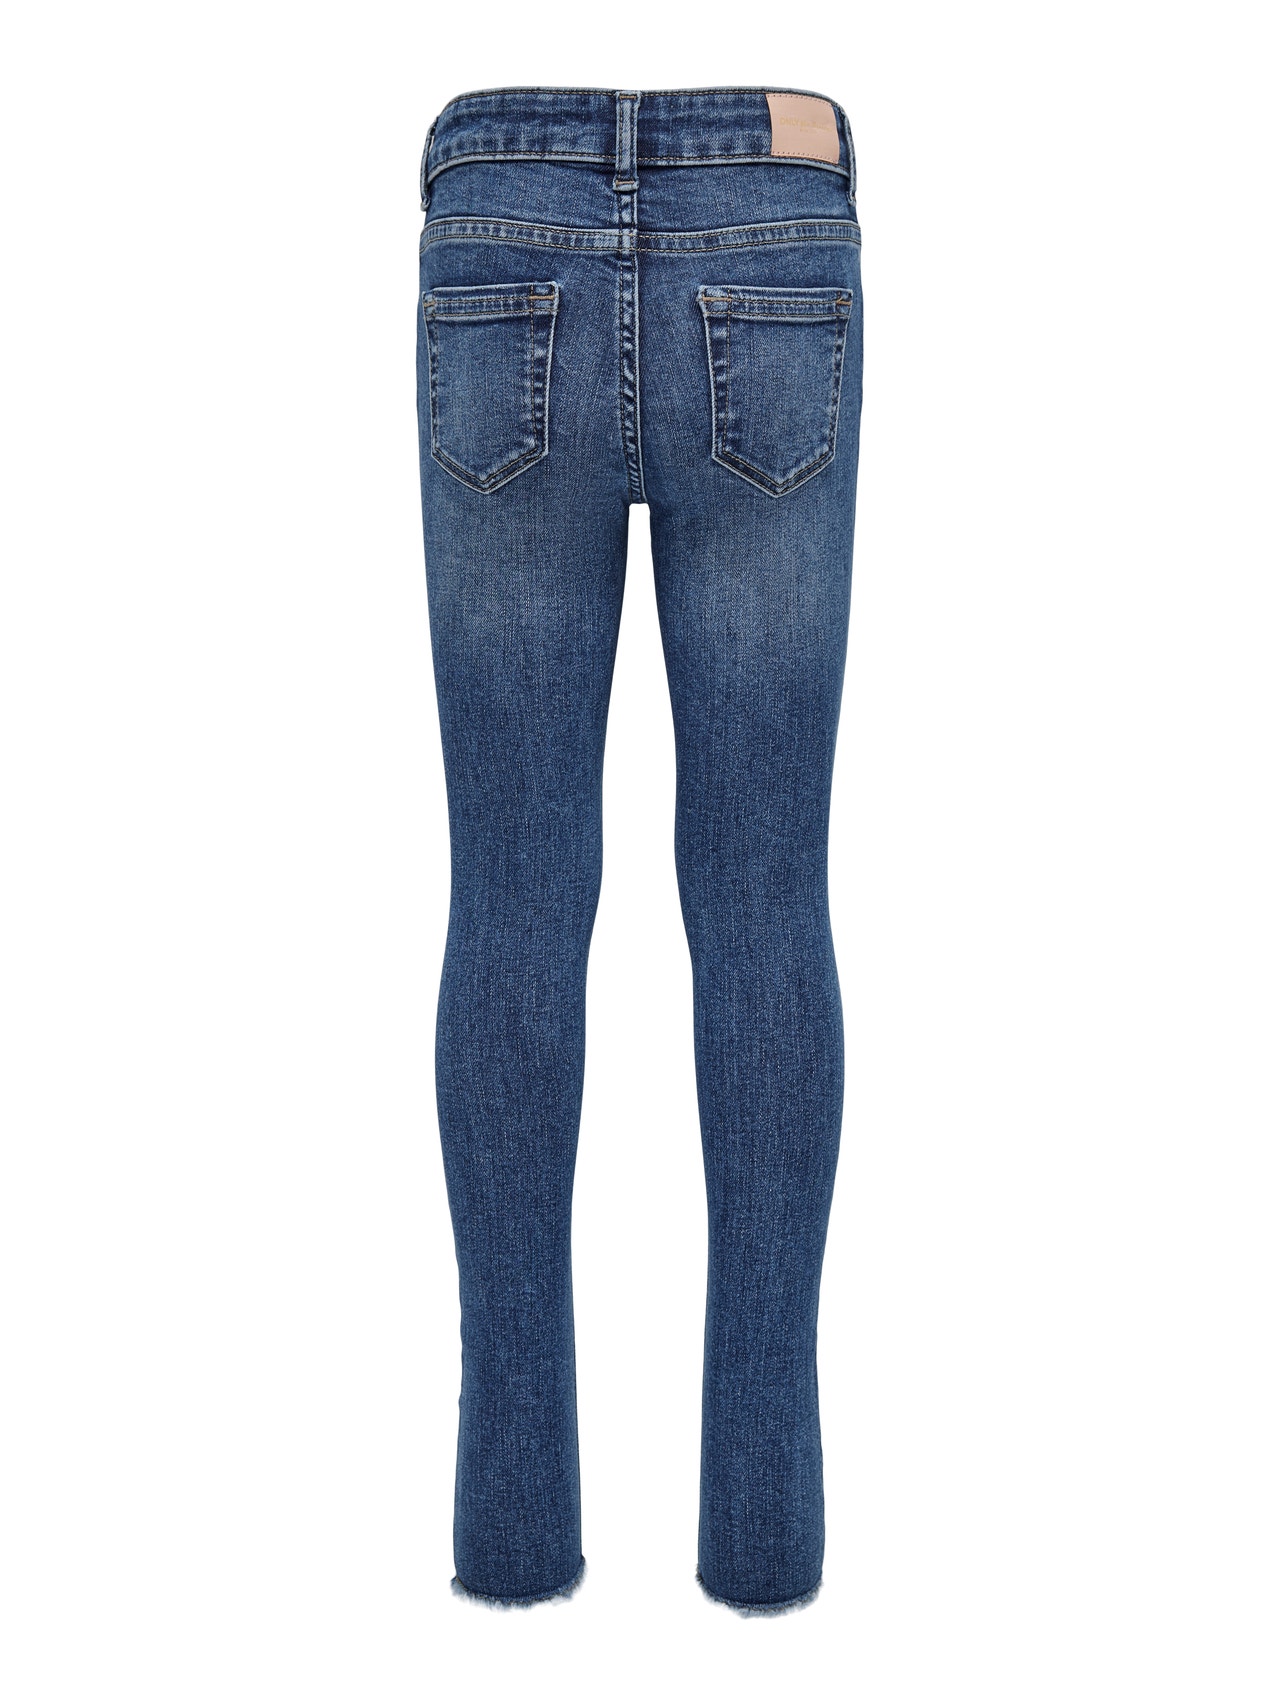 ONLY Jeans Skinny Fit -Light Blue Denim - 15269515